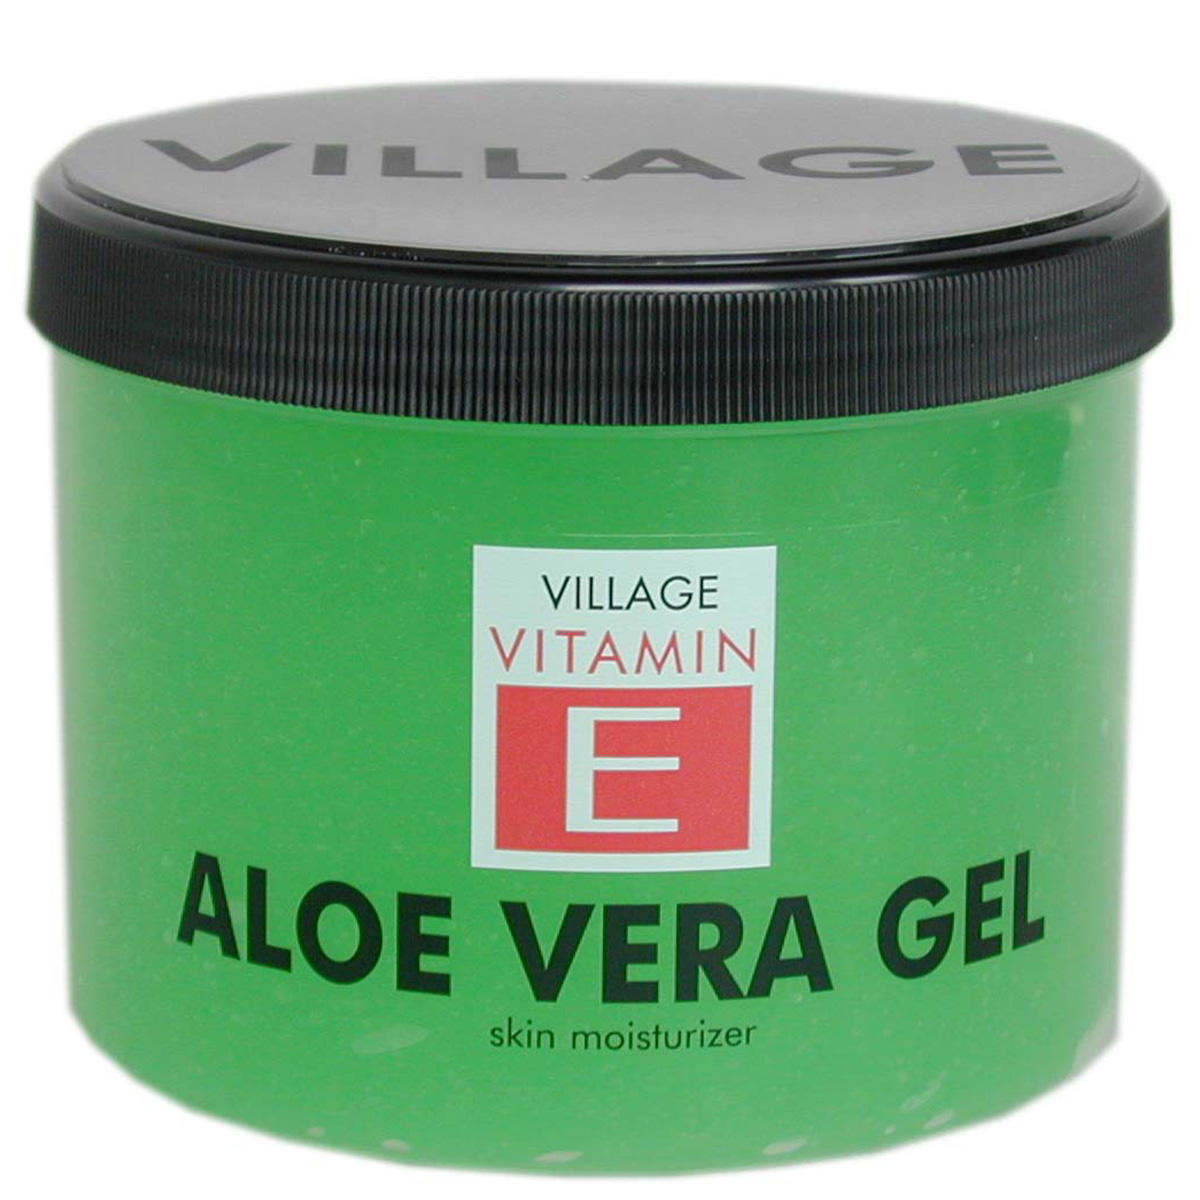 Village Vitamin E Aloe Vera Gel 500 ml - 1